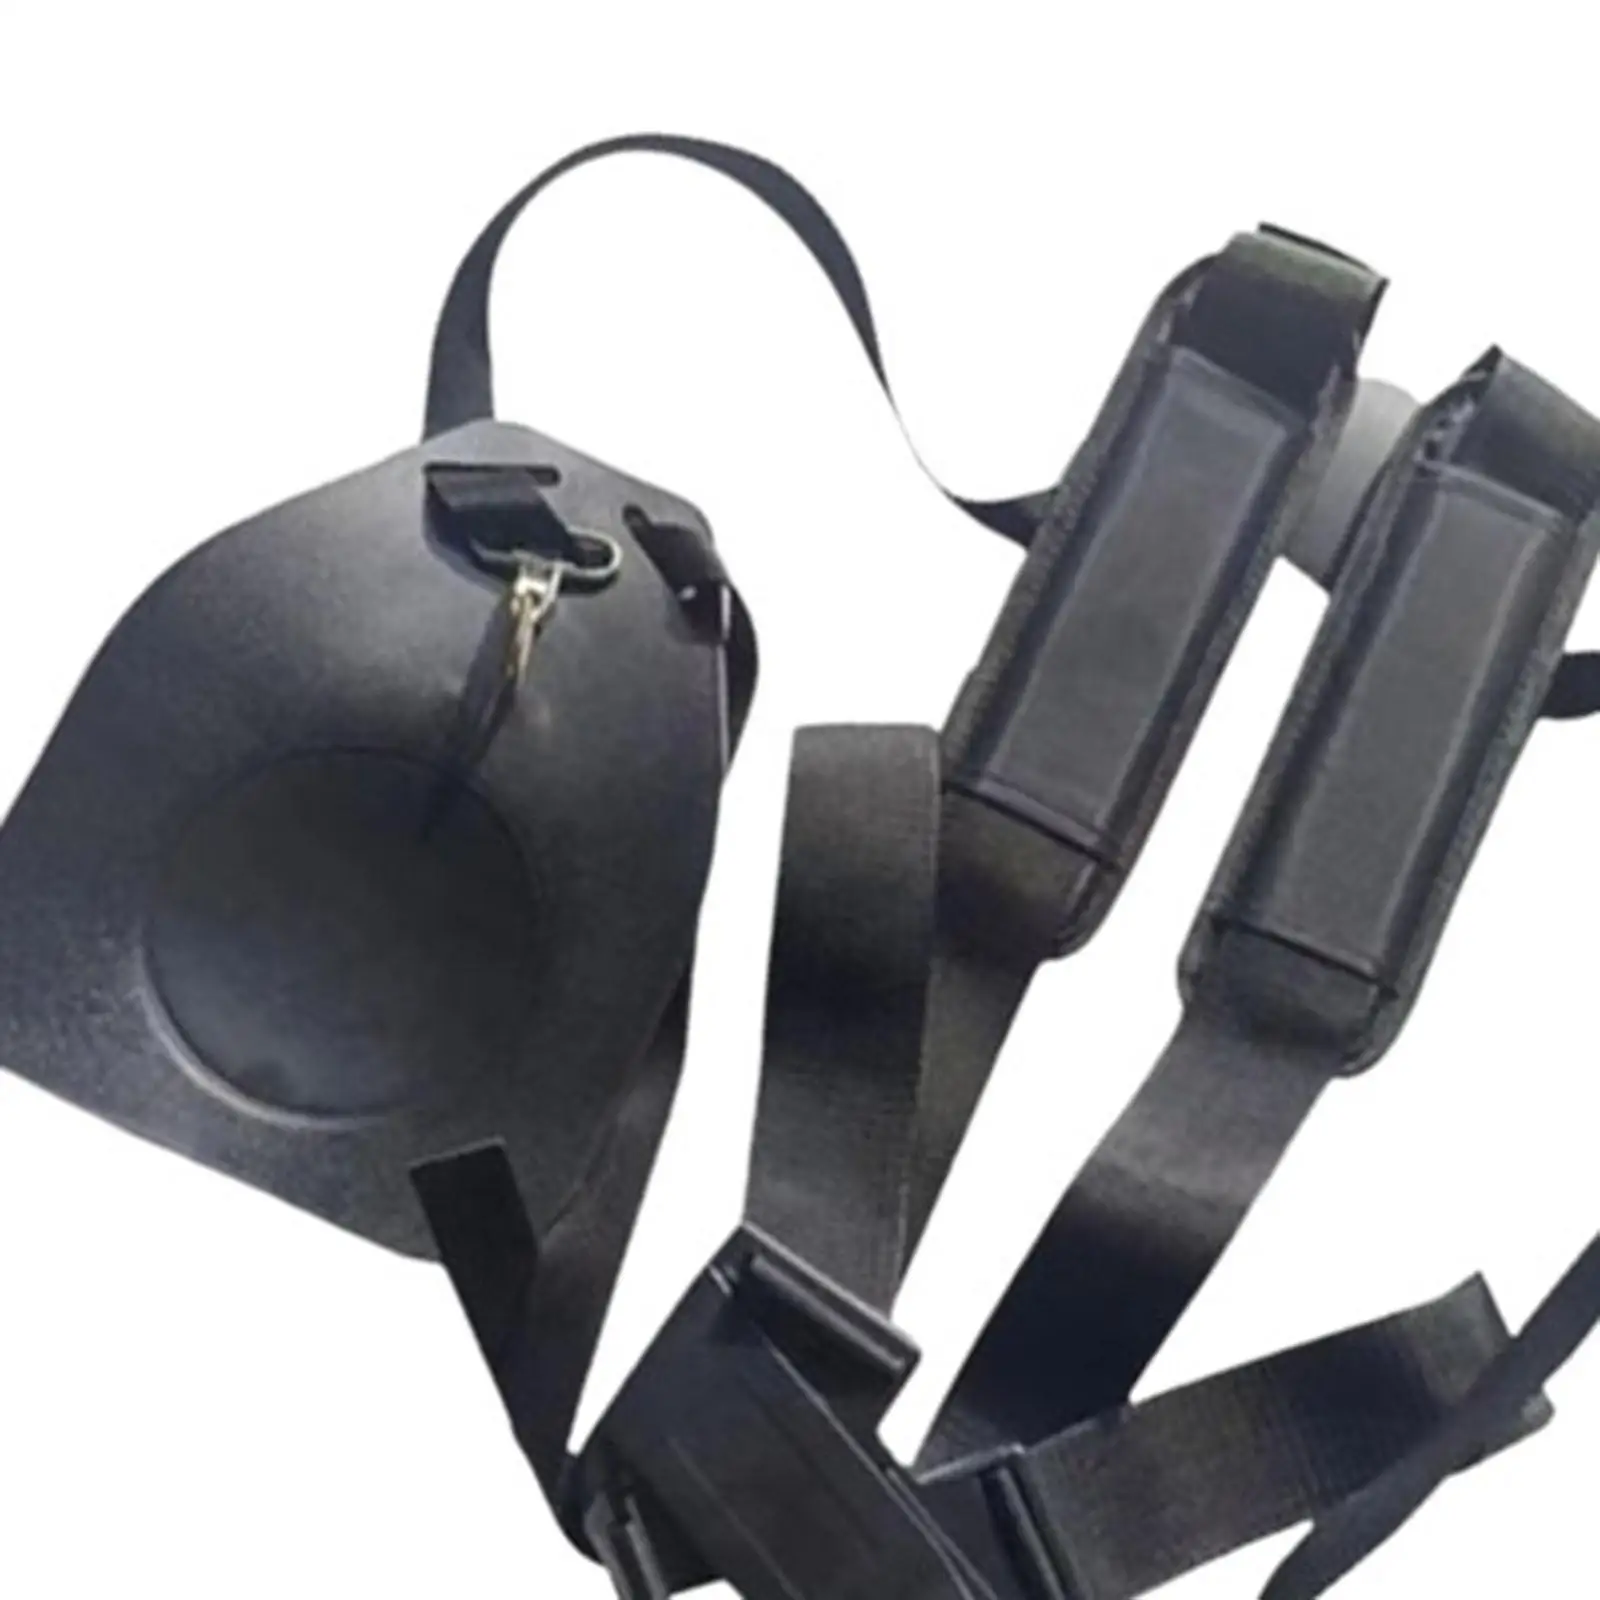 Trimmer Shoulder Strap Comfortable Easy Release Accessories Multipurpose Universal Shoulder Harness Adjustable Shoulder Strap